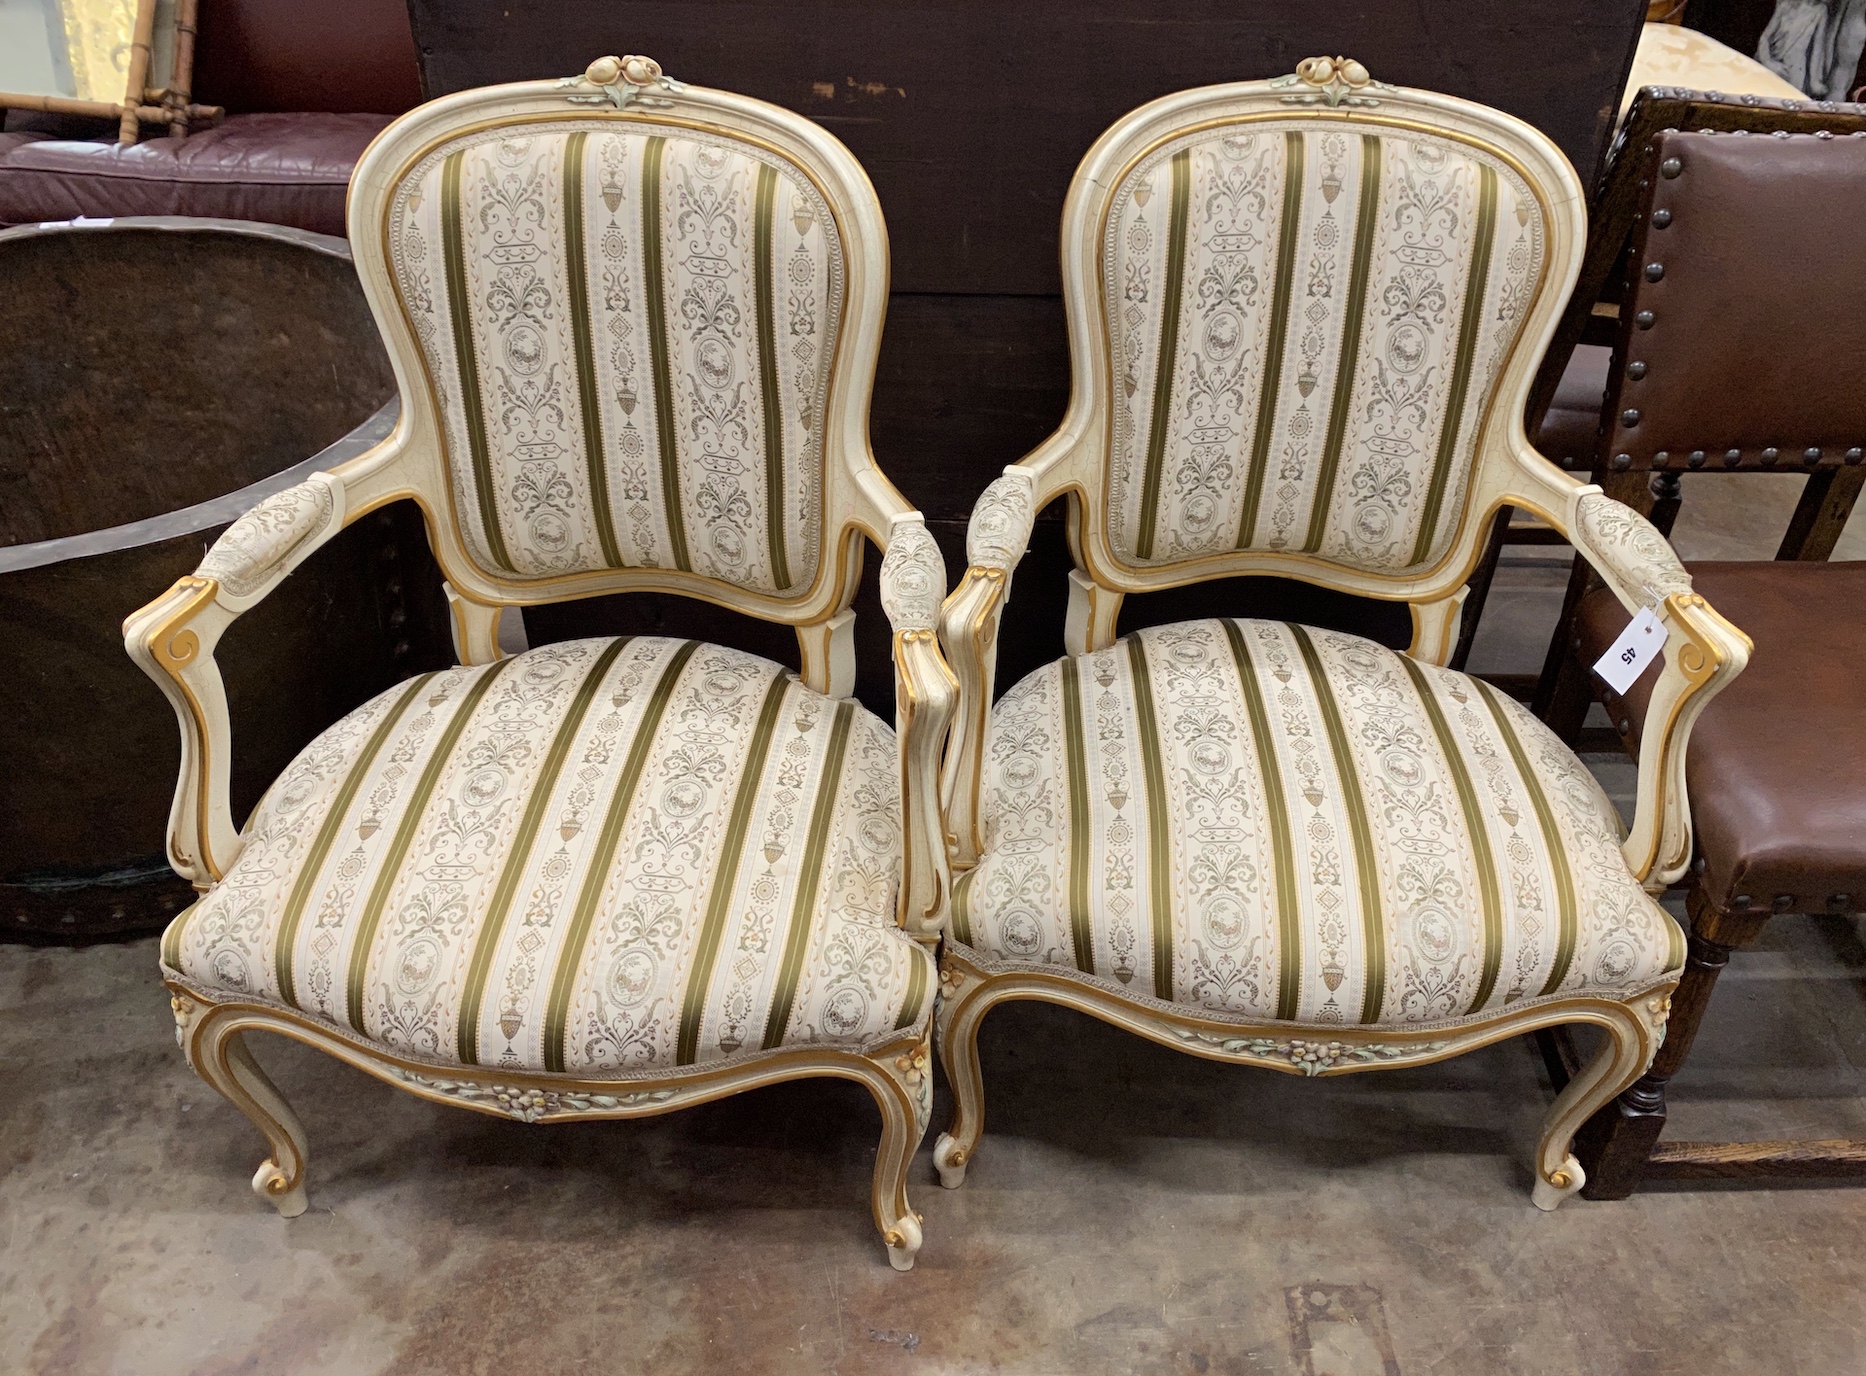 A pair of Louis VI style parcel gilt cream painted fauteuils, width 65cm, depth 52cm, height 92cm                                                                                                                           